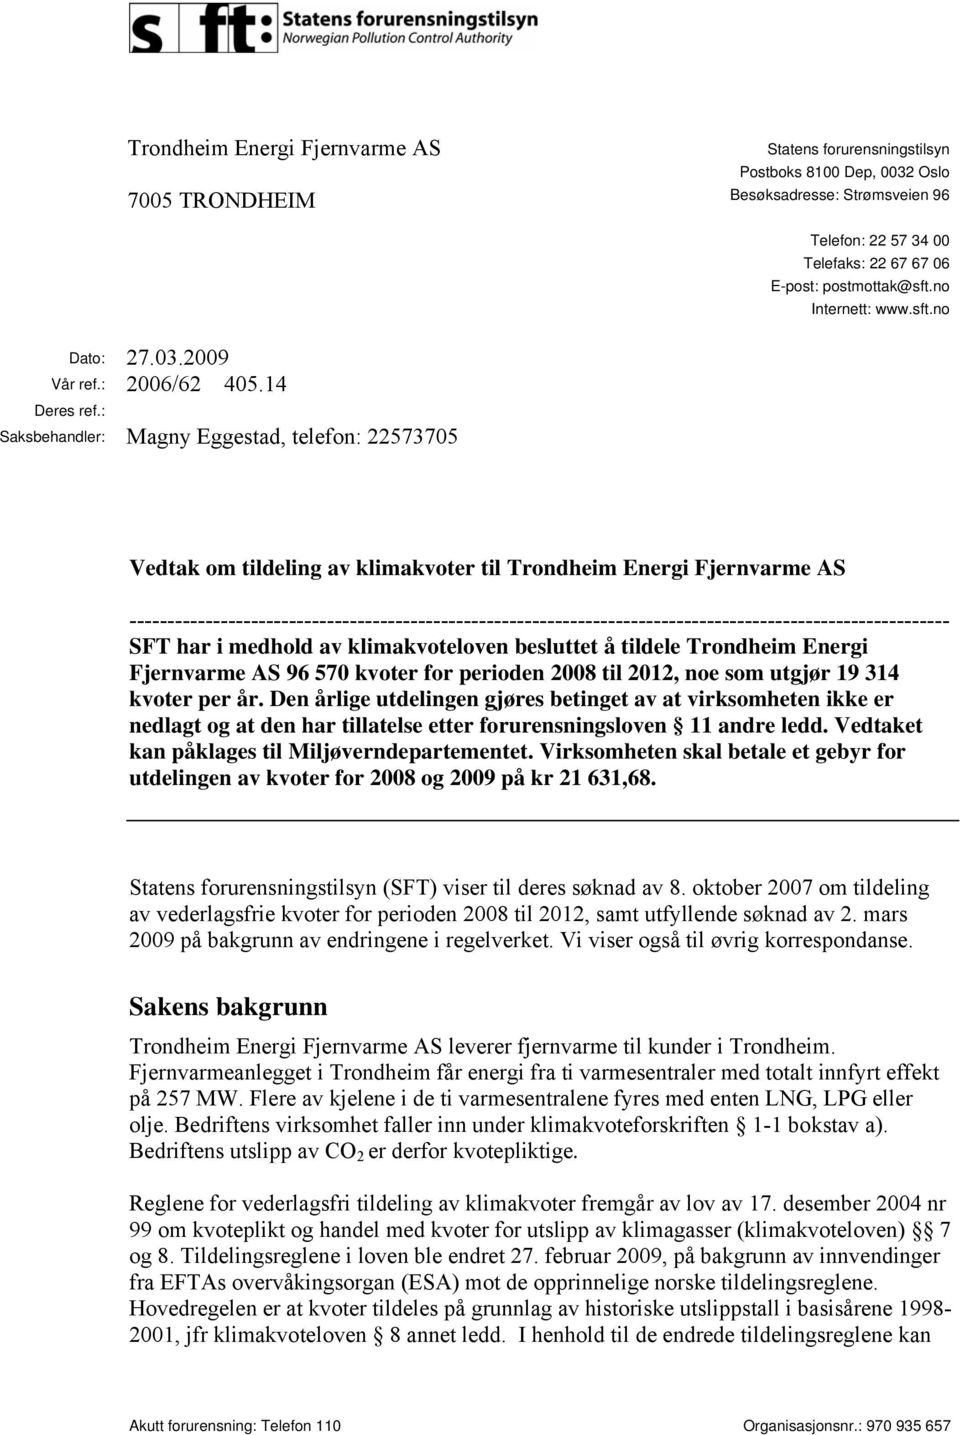 : Saksbehandler: Magny Eggestad, telefon: 22573705 Vedtak om tildeling av klimakvoter til Trondheim Energi Fjernvarme AS